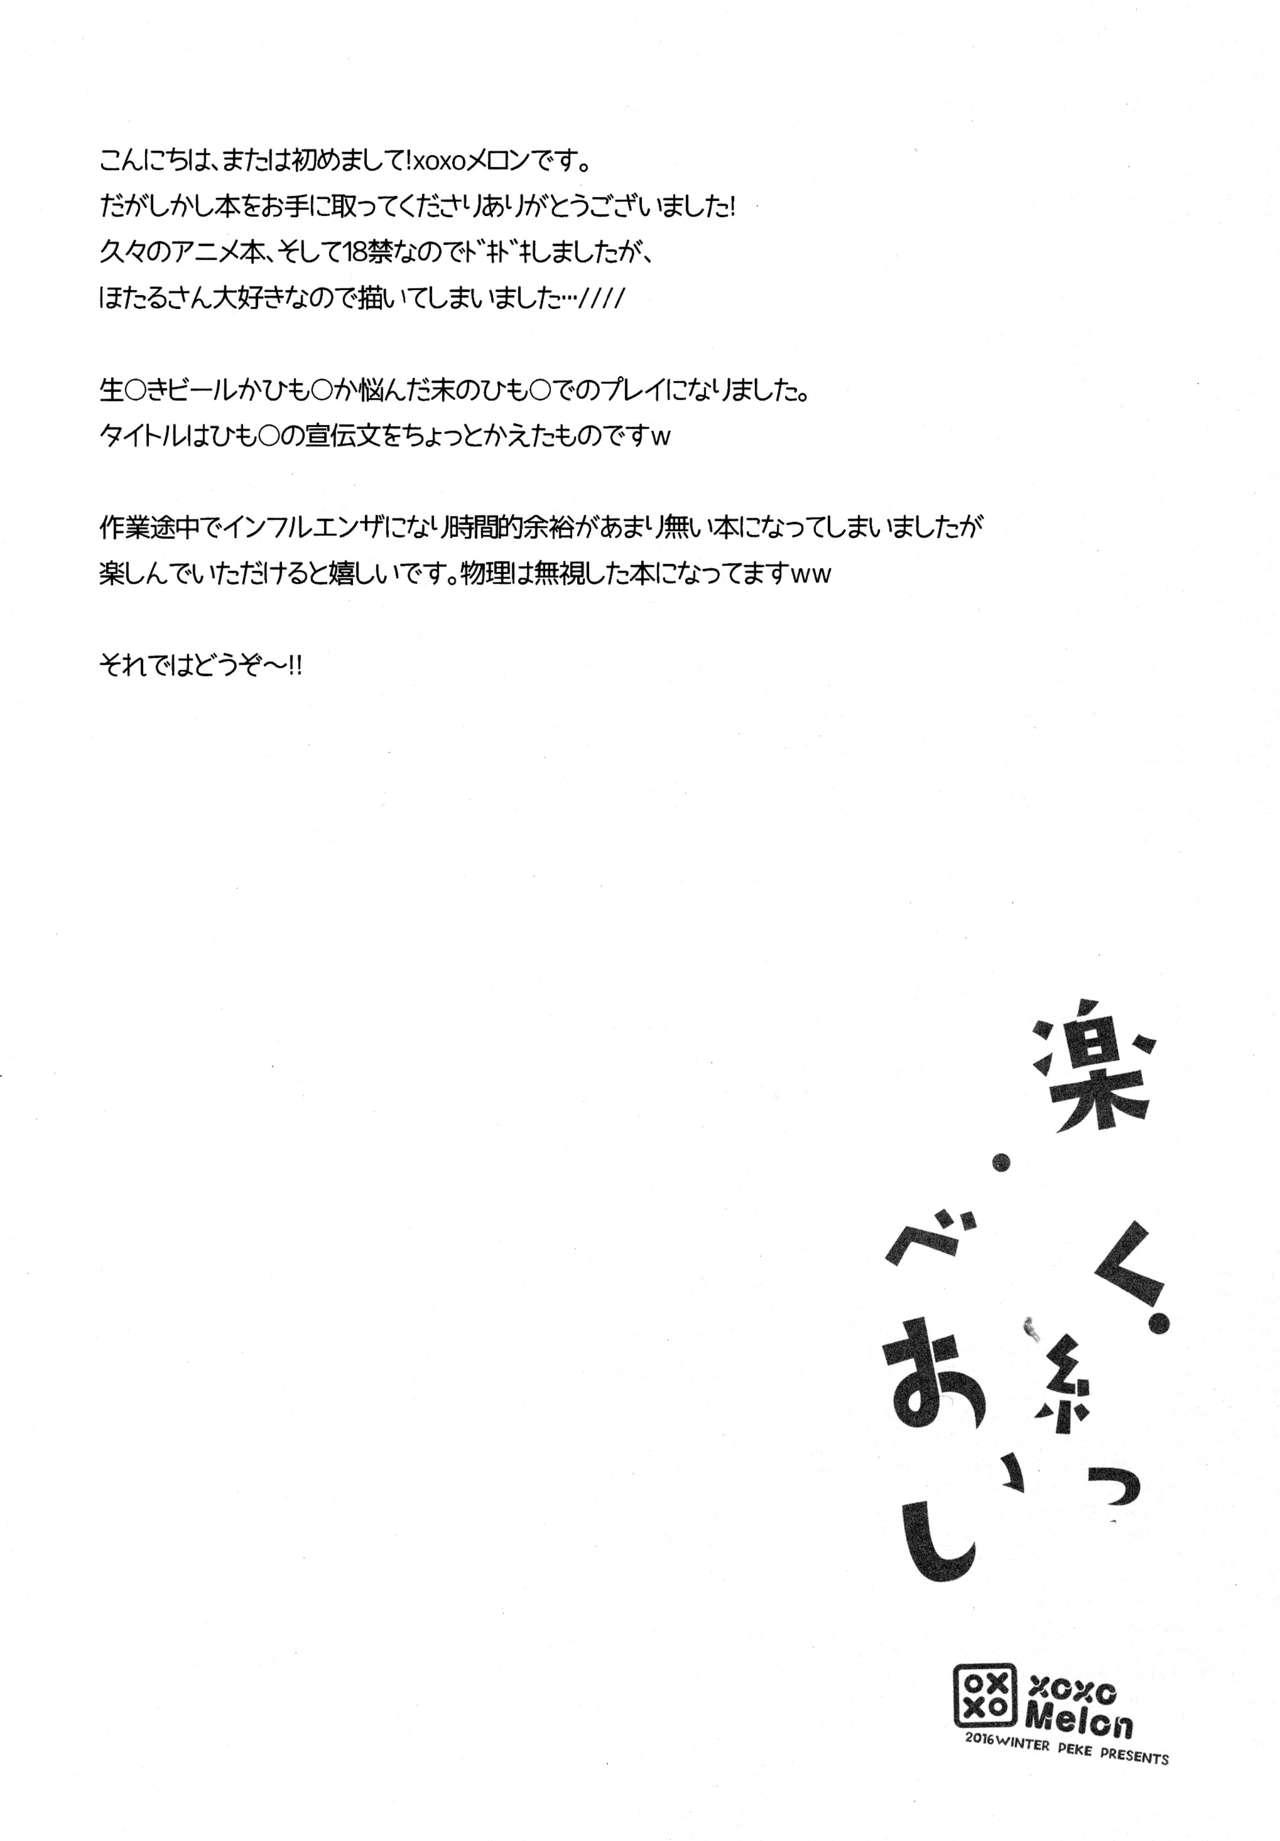 Tight Ass Tanoshiku Shibatte Tabete Oishii - Dagashi kashi Abg - Page 4